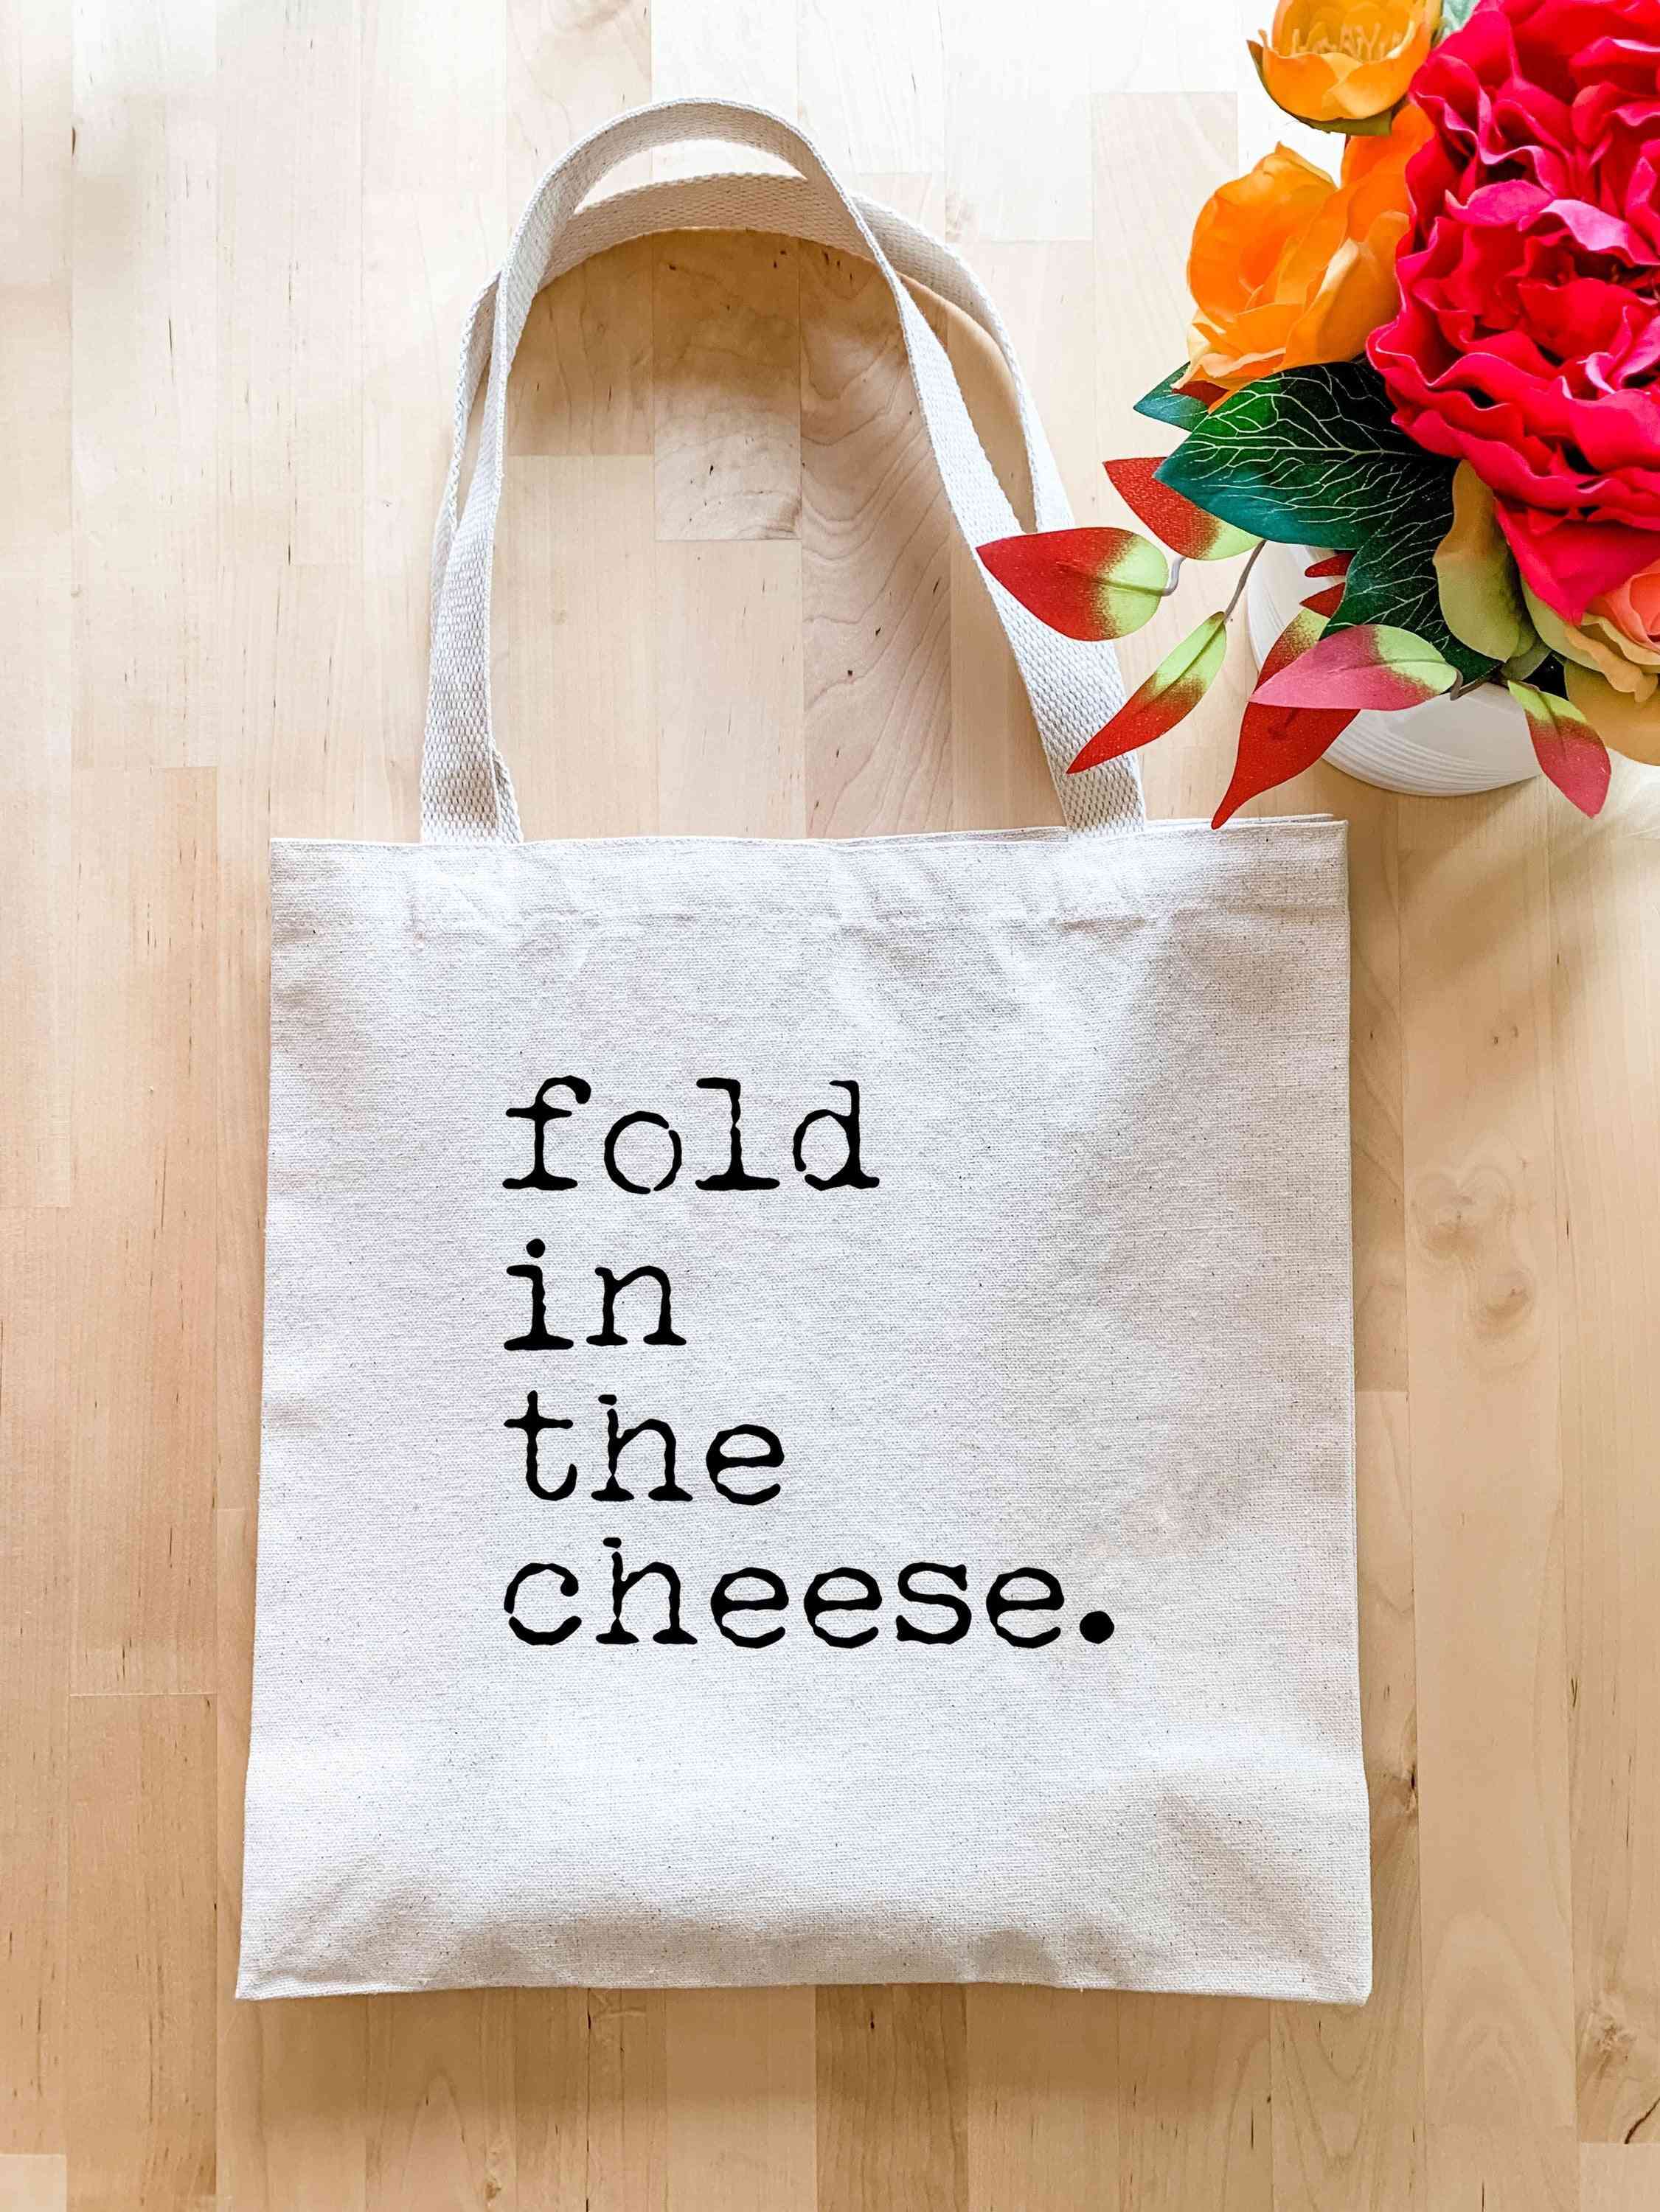 сгънете в торбата със сирене